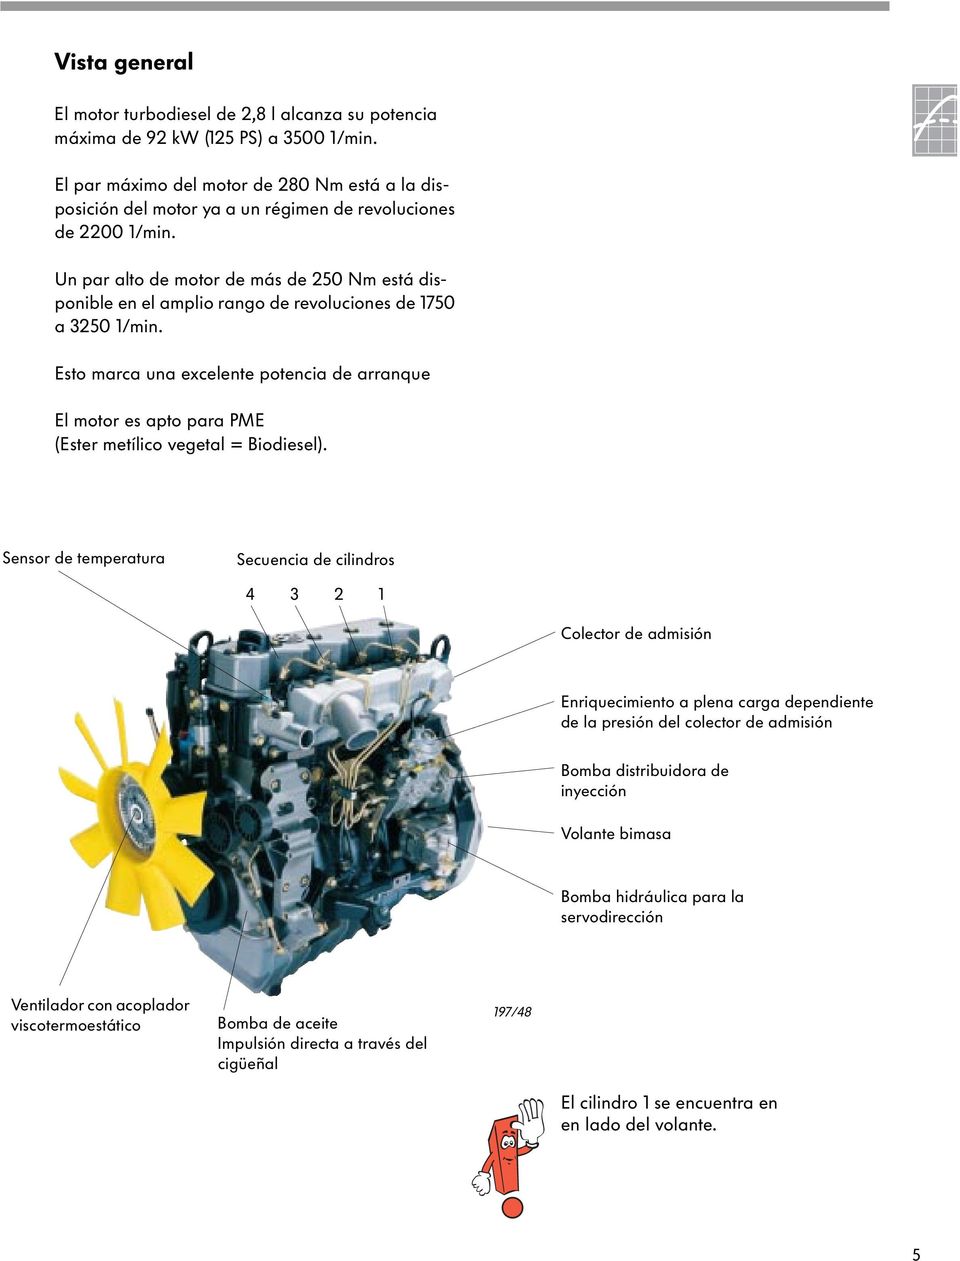 Un par alto de motor de más de 250 Nm está disponible en el amplio rango de revoluciones de 1750 a 3250 1/min.